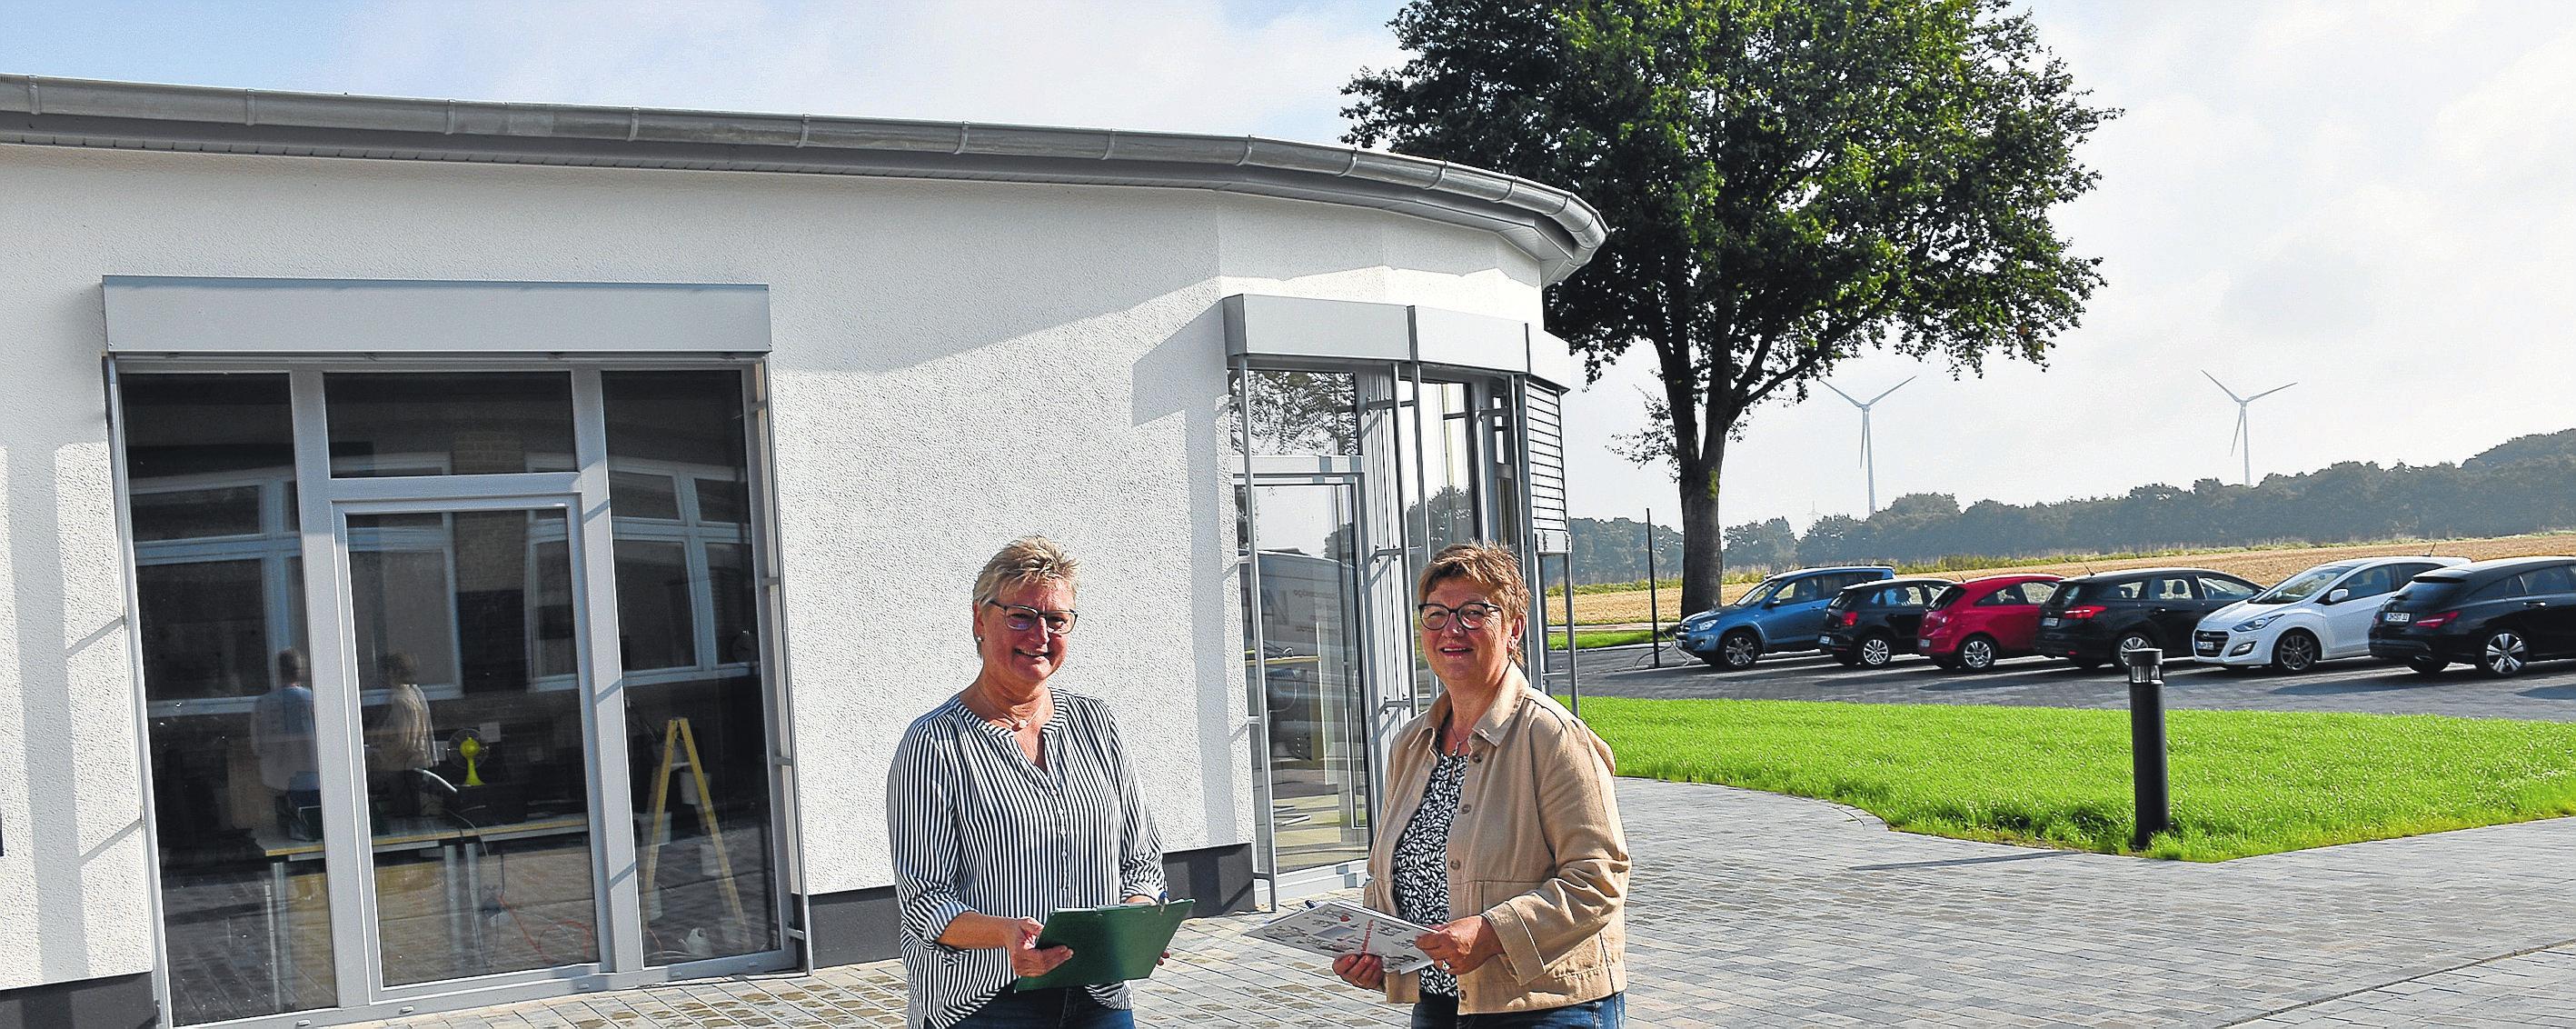 Stolz auf das gelungene Projekt: Claudia Emker und Frauke Brüning von der Samtgemeinde Barnstorf. Fotos: Wehring